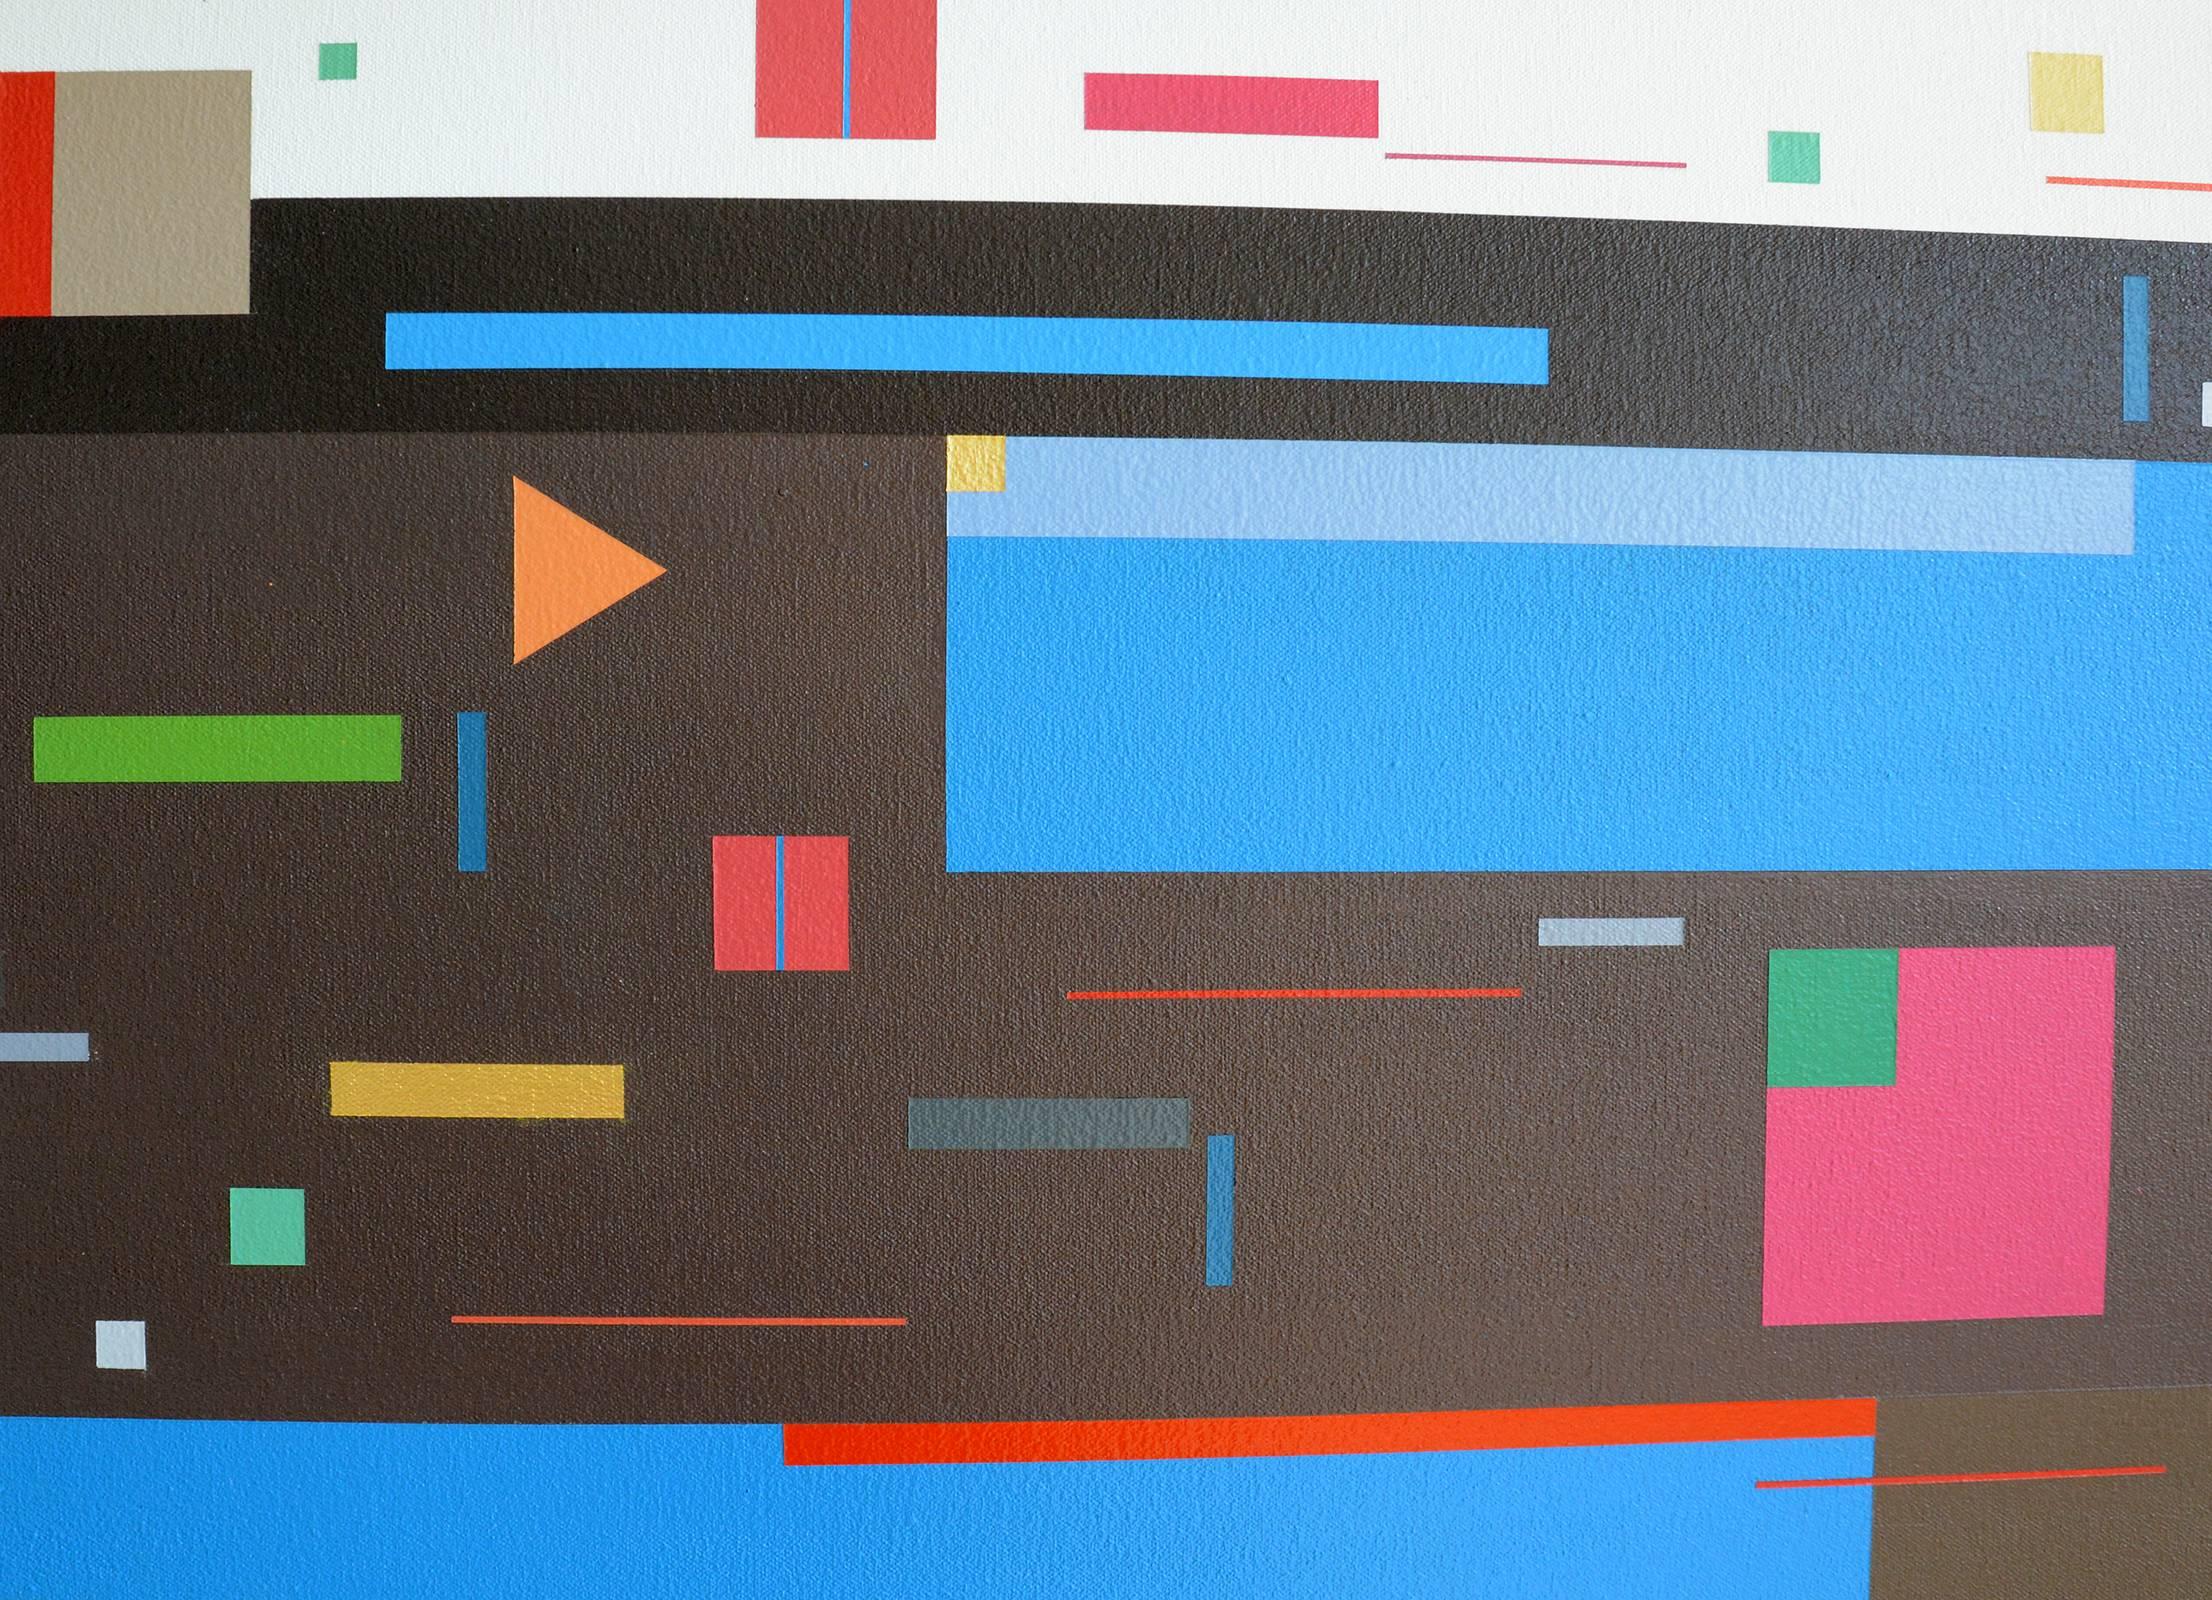 Auf diesem lebendigen Gemälde von Burton Kramer tanzen Rechtecke und Quadrate in tiefem Rosa, Himmelblau, Moosgrün, hellem Orange und Rot über einen schokoladenbraunen Grund. 

Der Titel des Gemäldes bezieht sich auf den Line Dance, einen